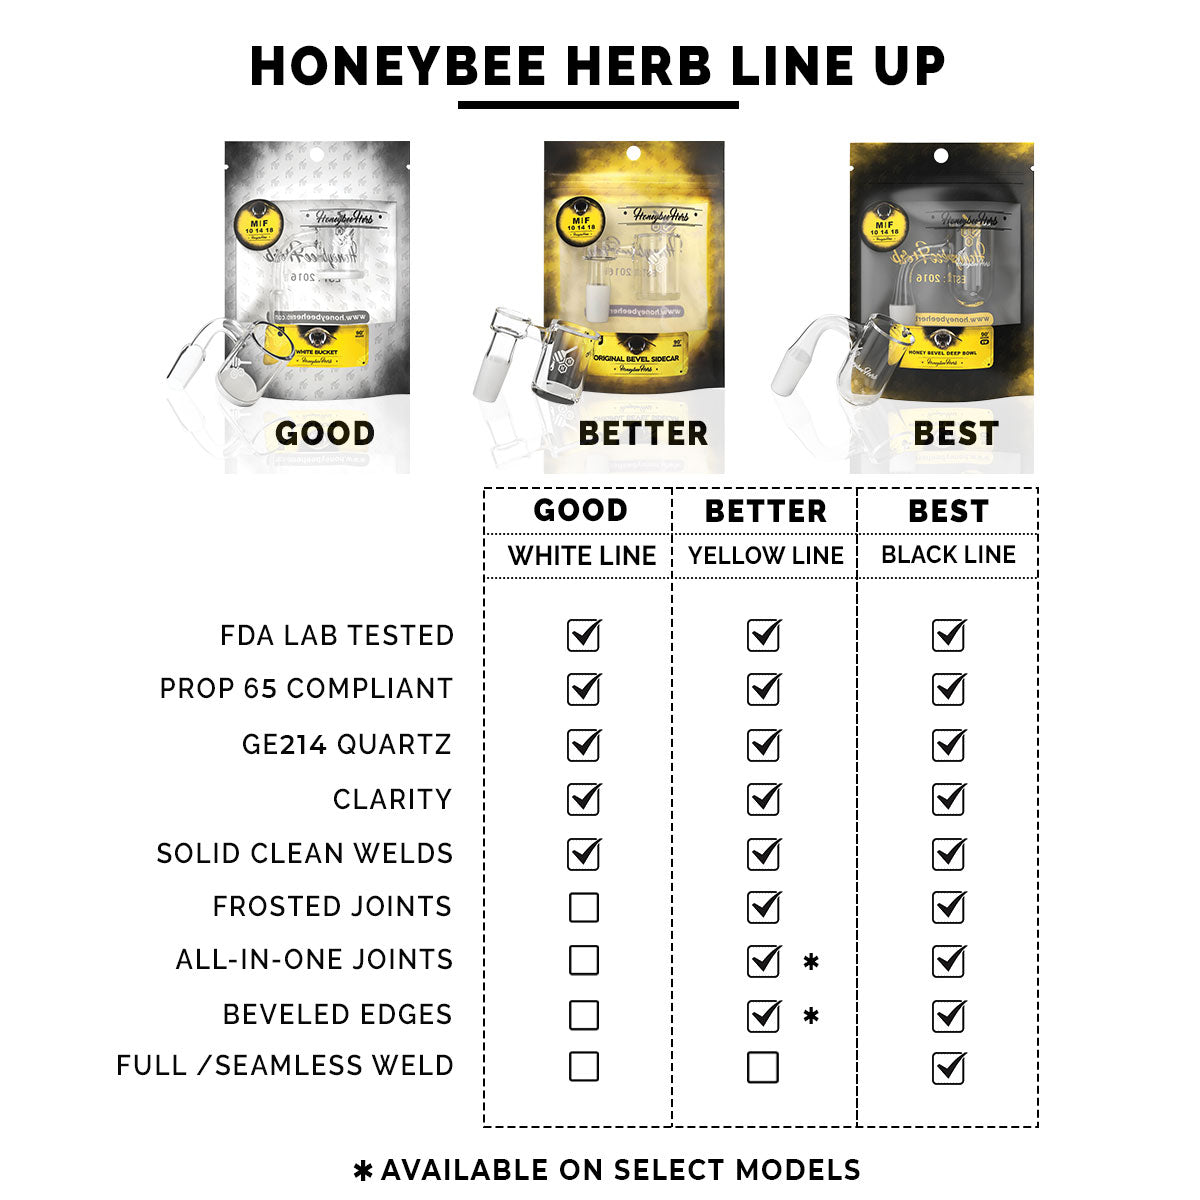 Honeybee Herb Enail Quartz Banger comparison chart showing Good, Better, Best product lines